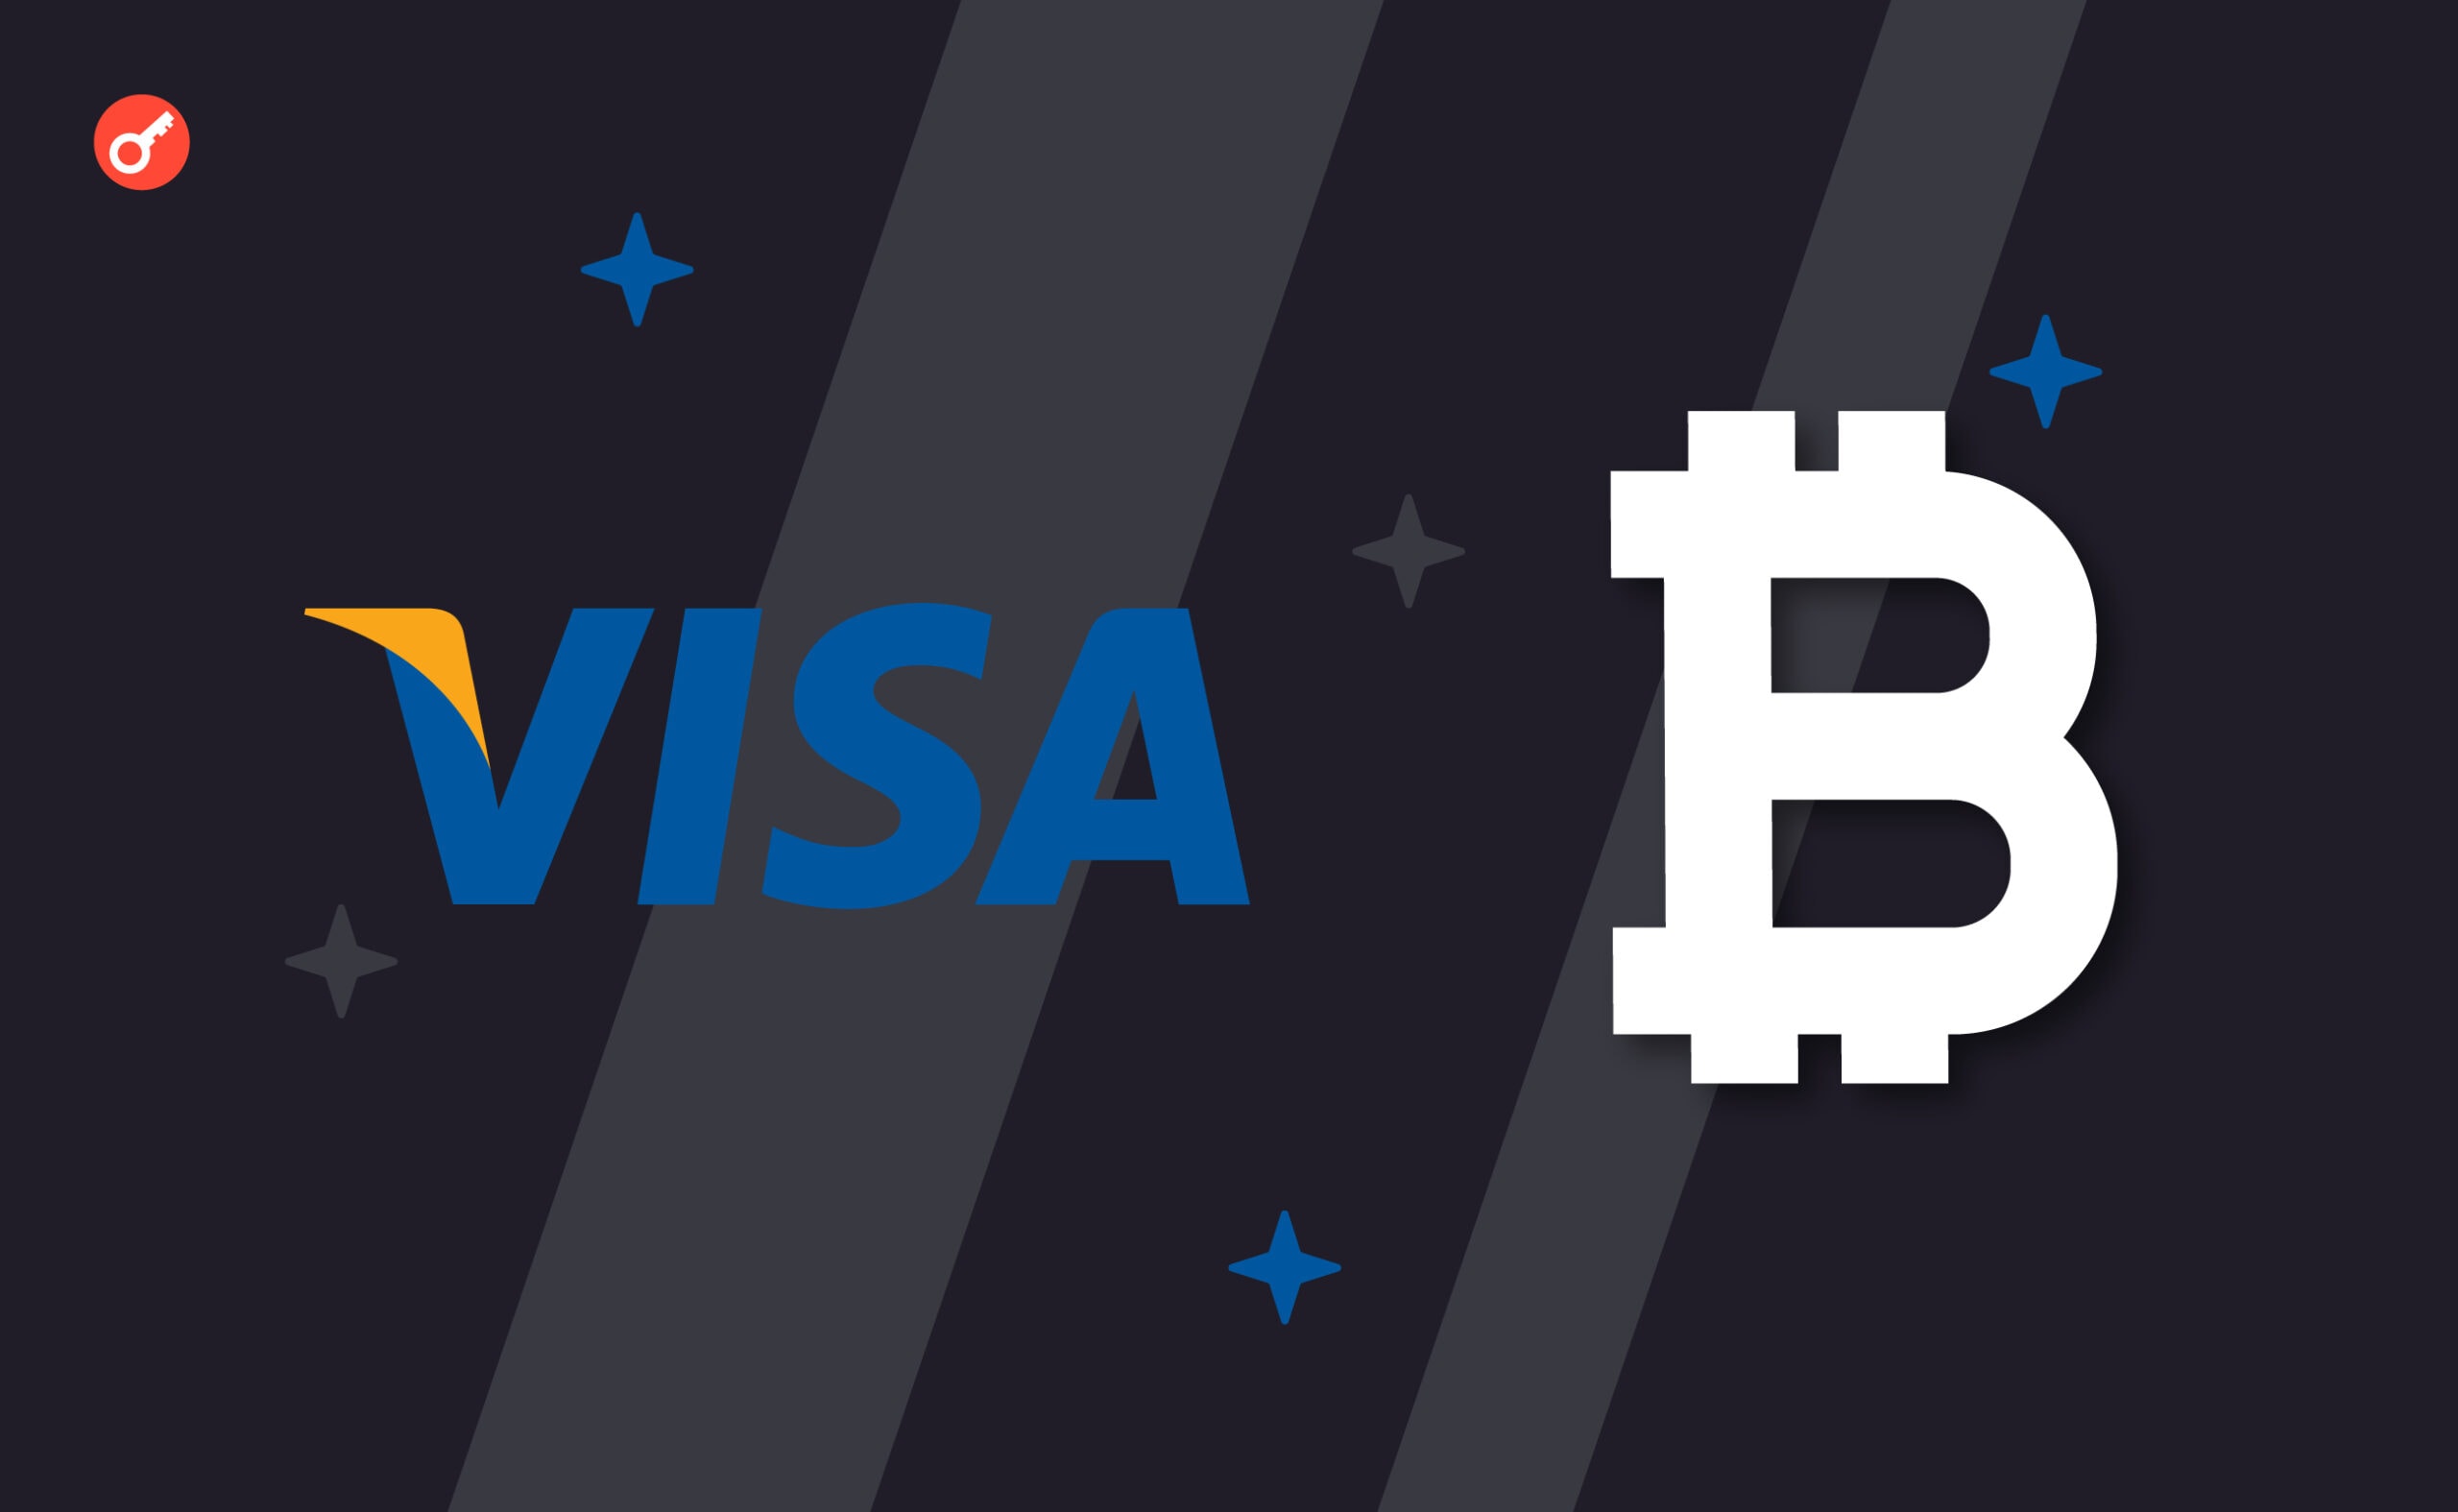 Visa поповнює штат криптопідрозділу для «амбітного» проєкту. Головний колаж новини.